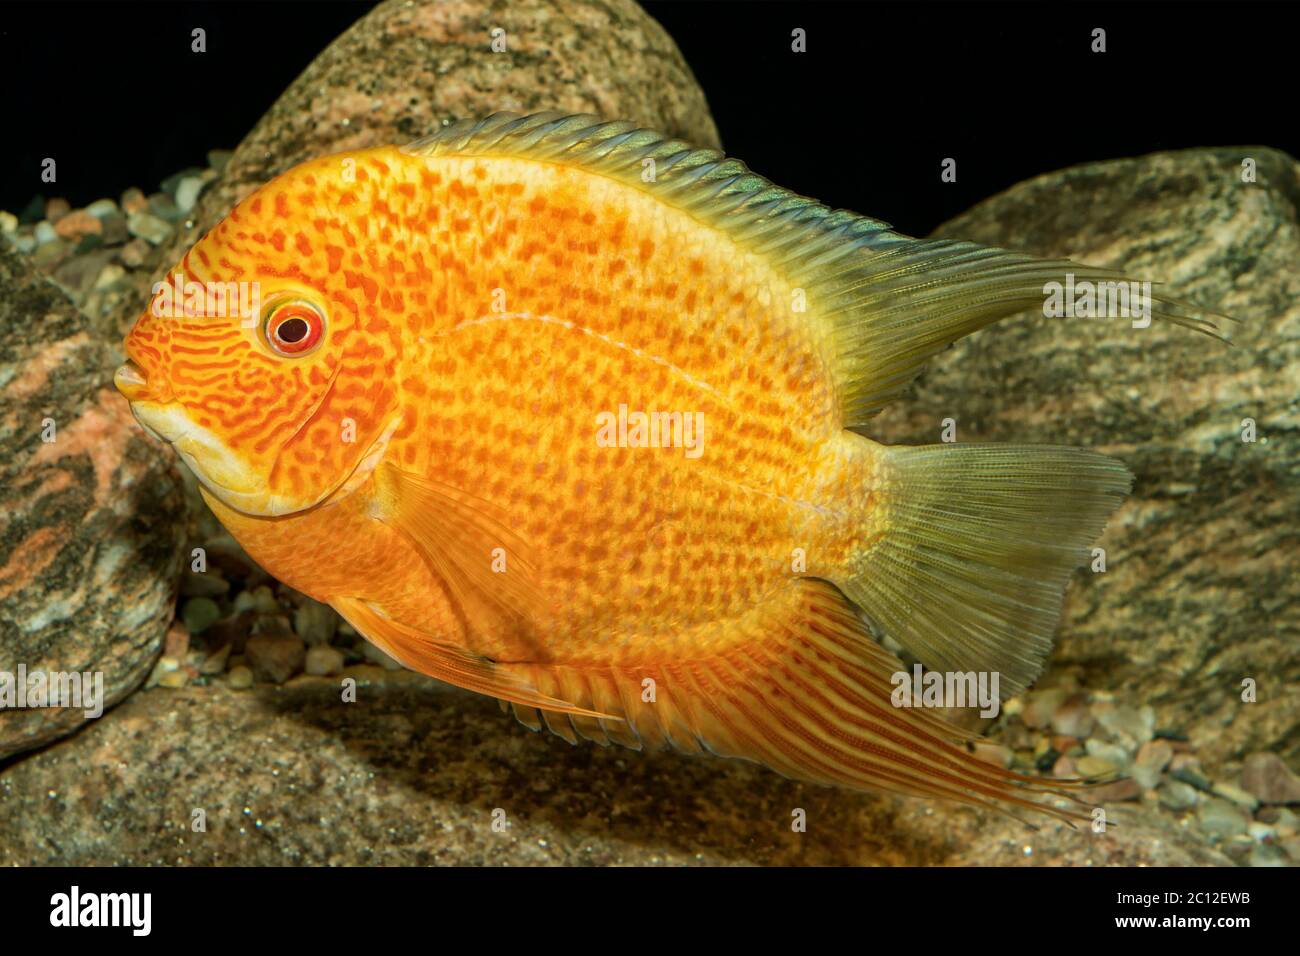 Portrait of cichlid fish (Heros severus) in aquarium Stock Photo